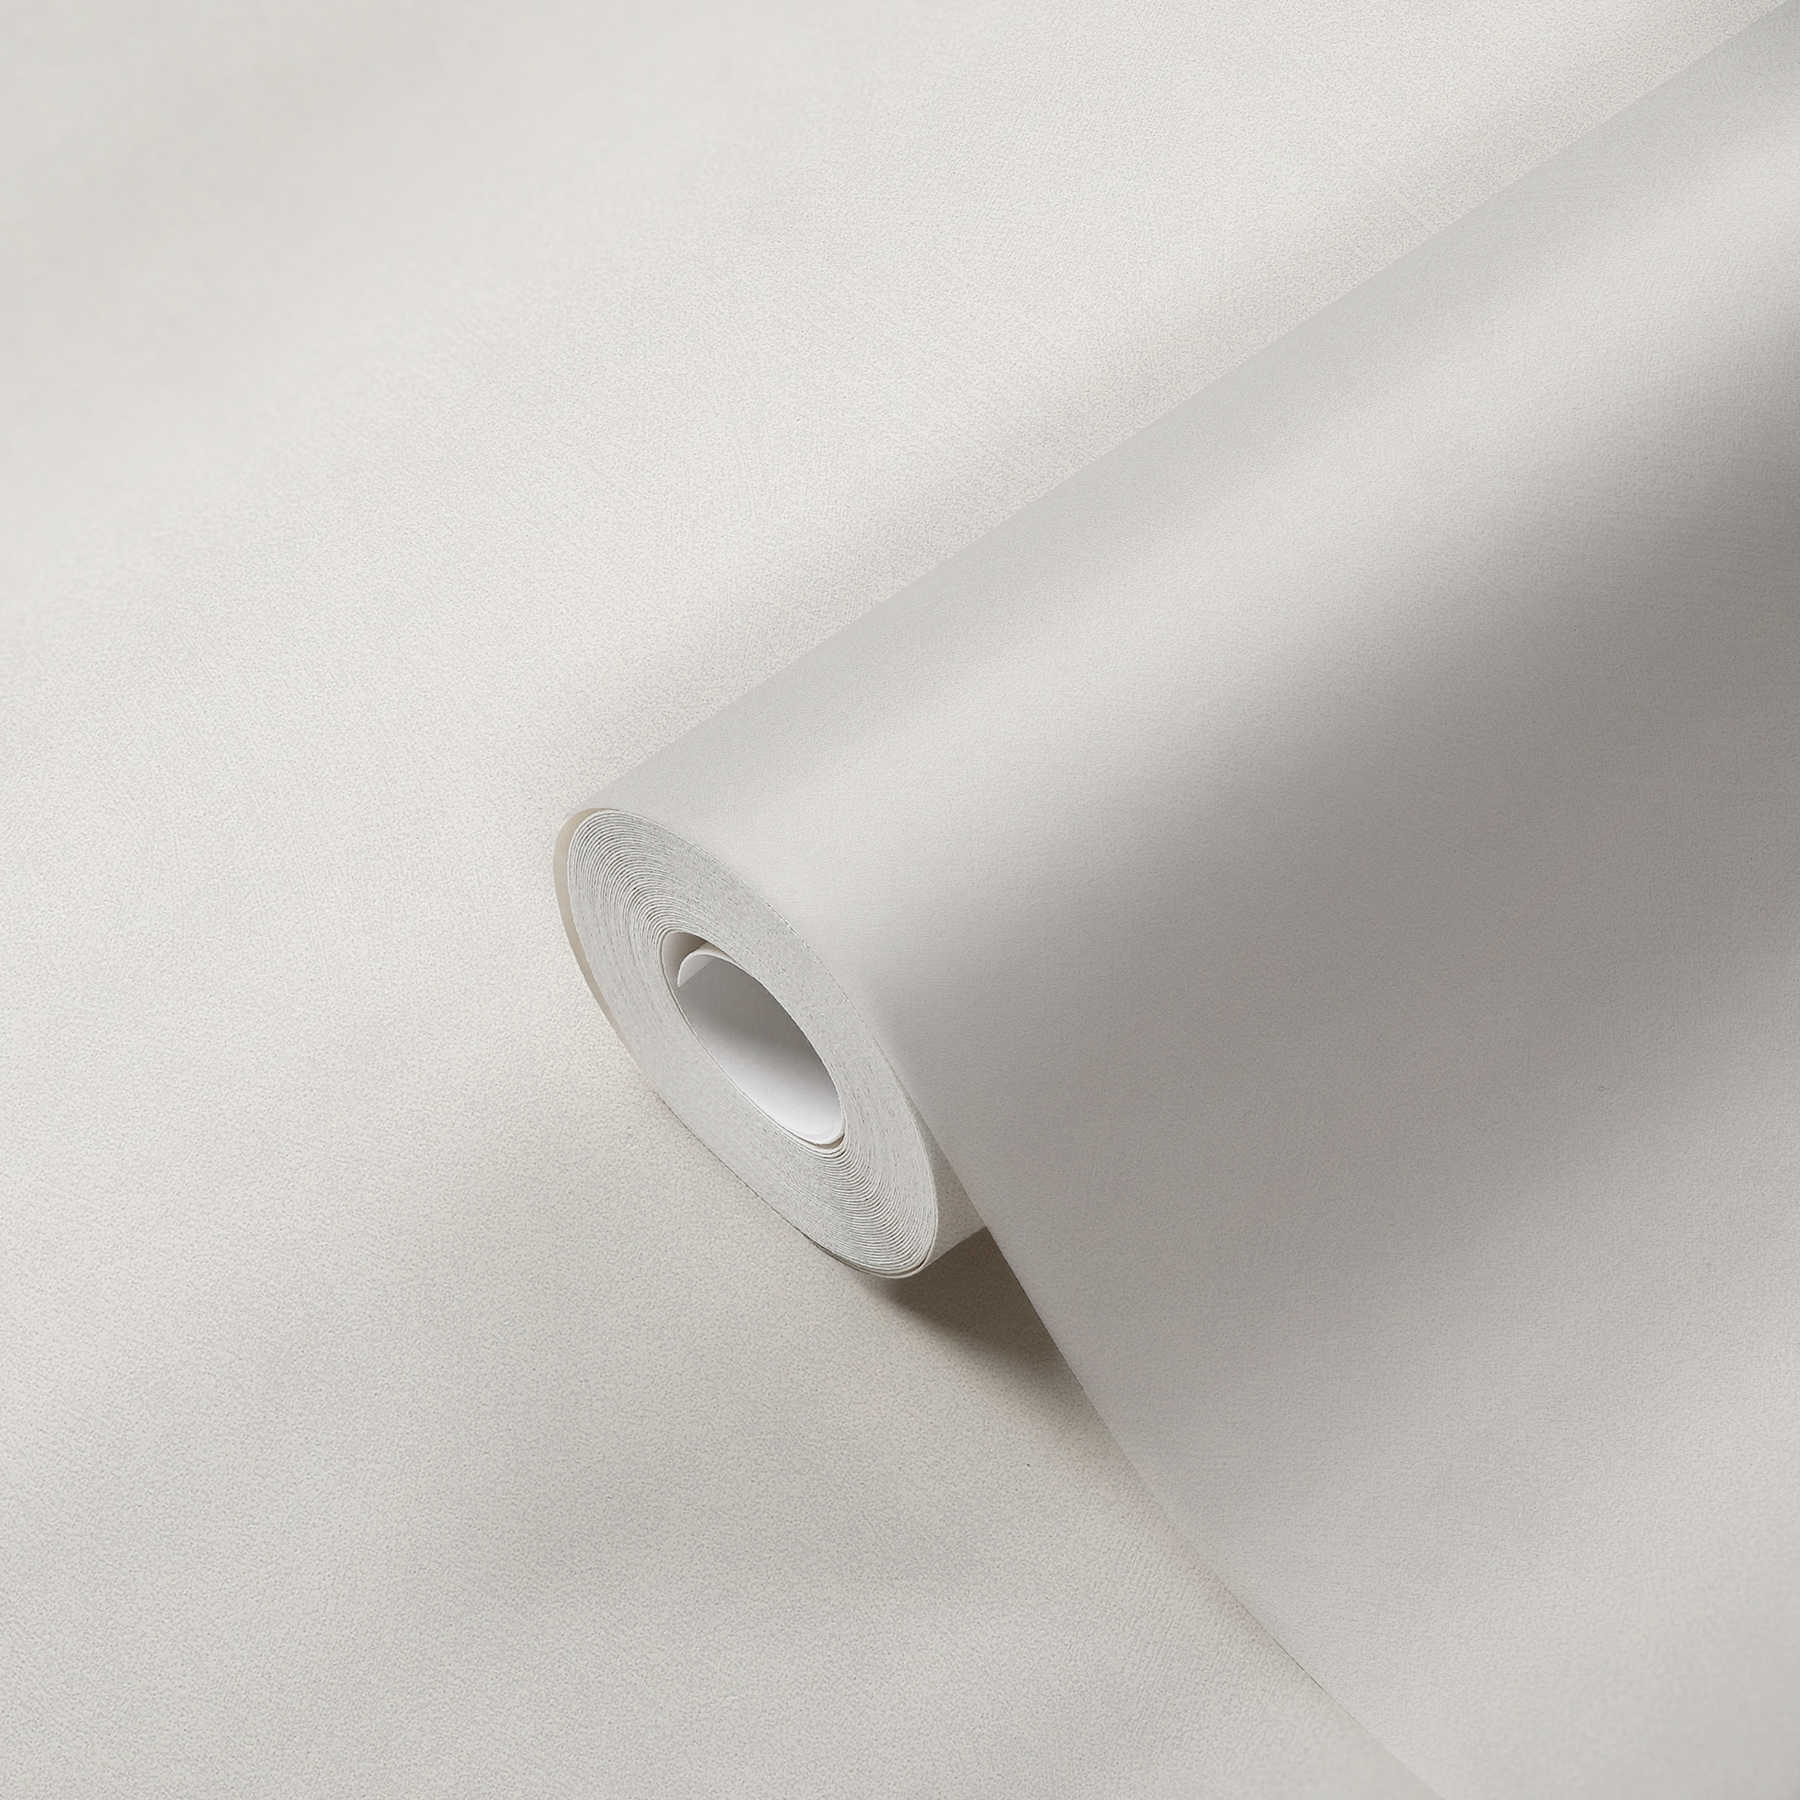             Non-woven wallpaper plain with linen look - grey
        